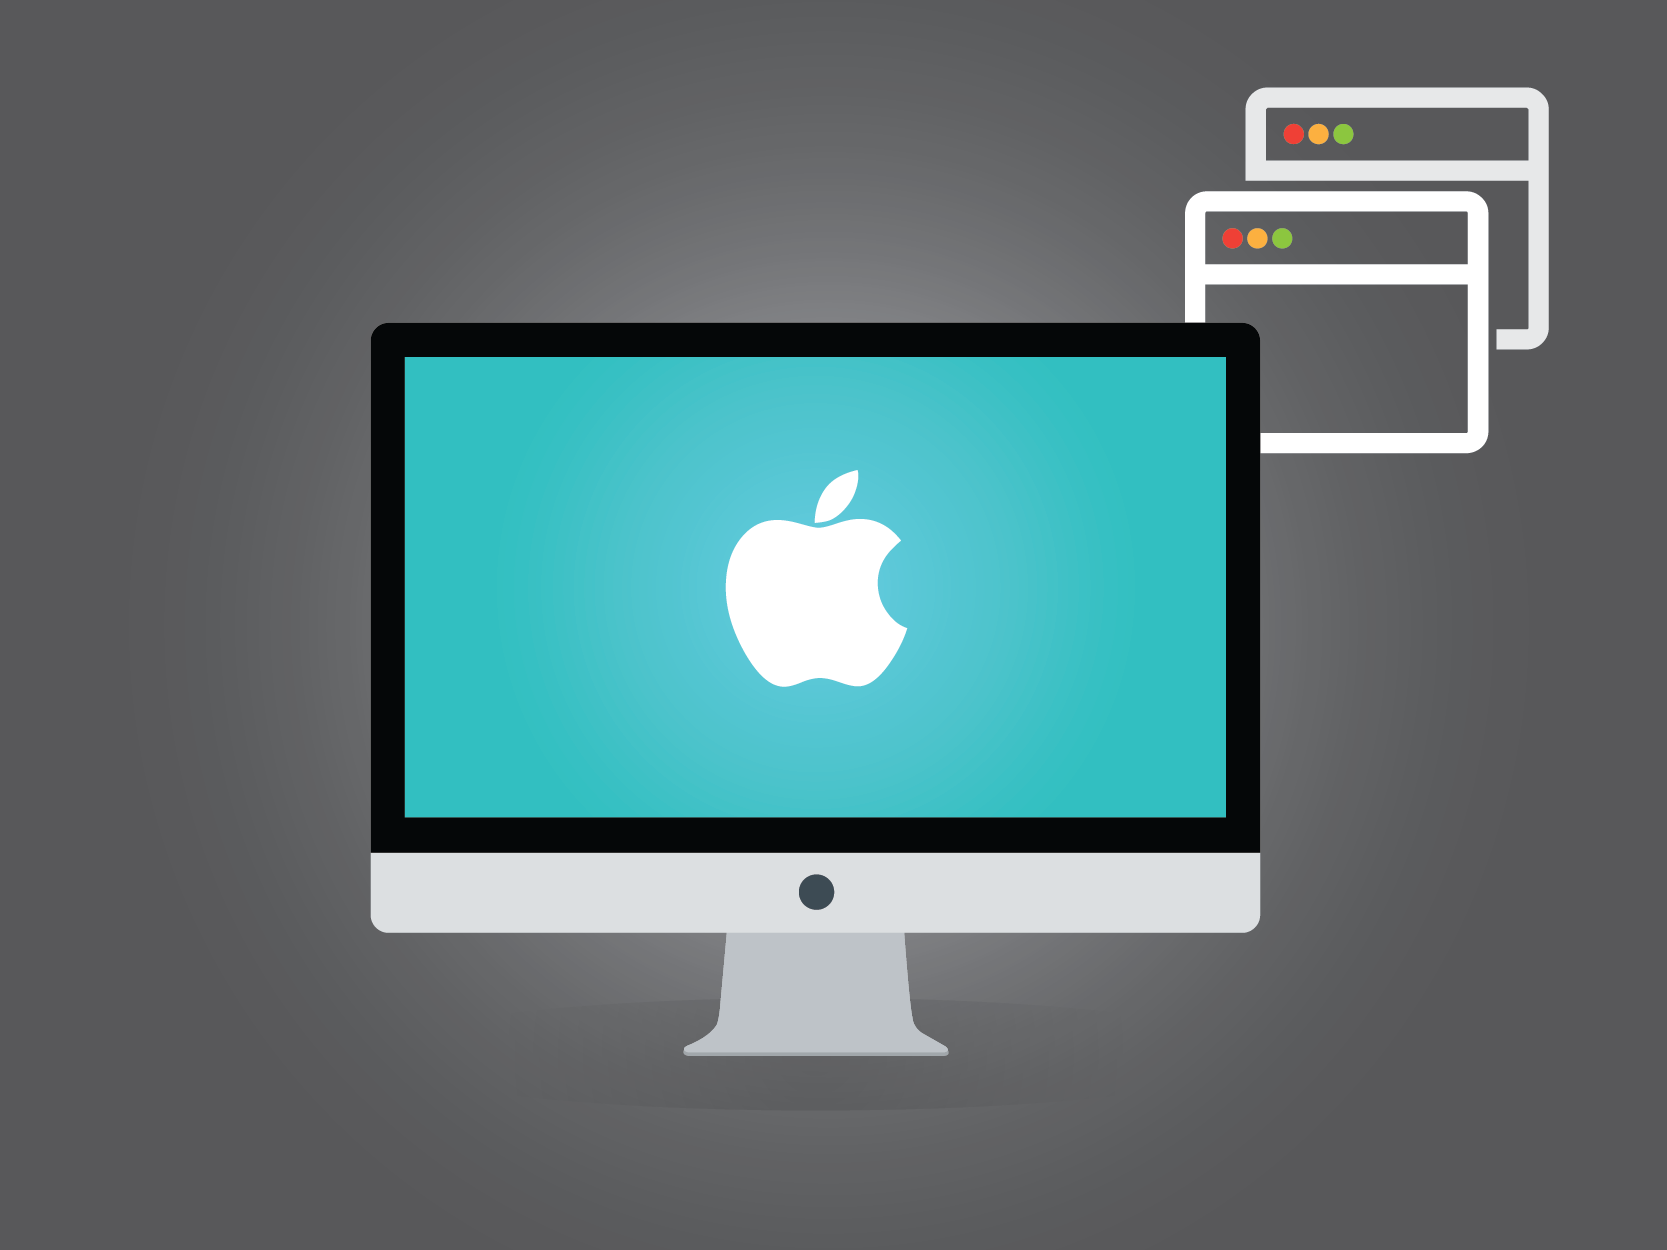 Imagen ejemplo de Mac OS X.